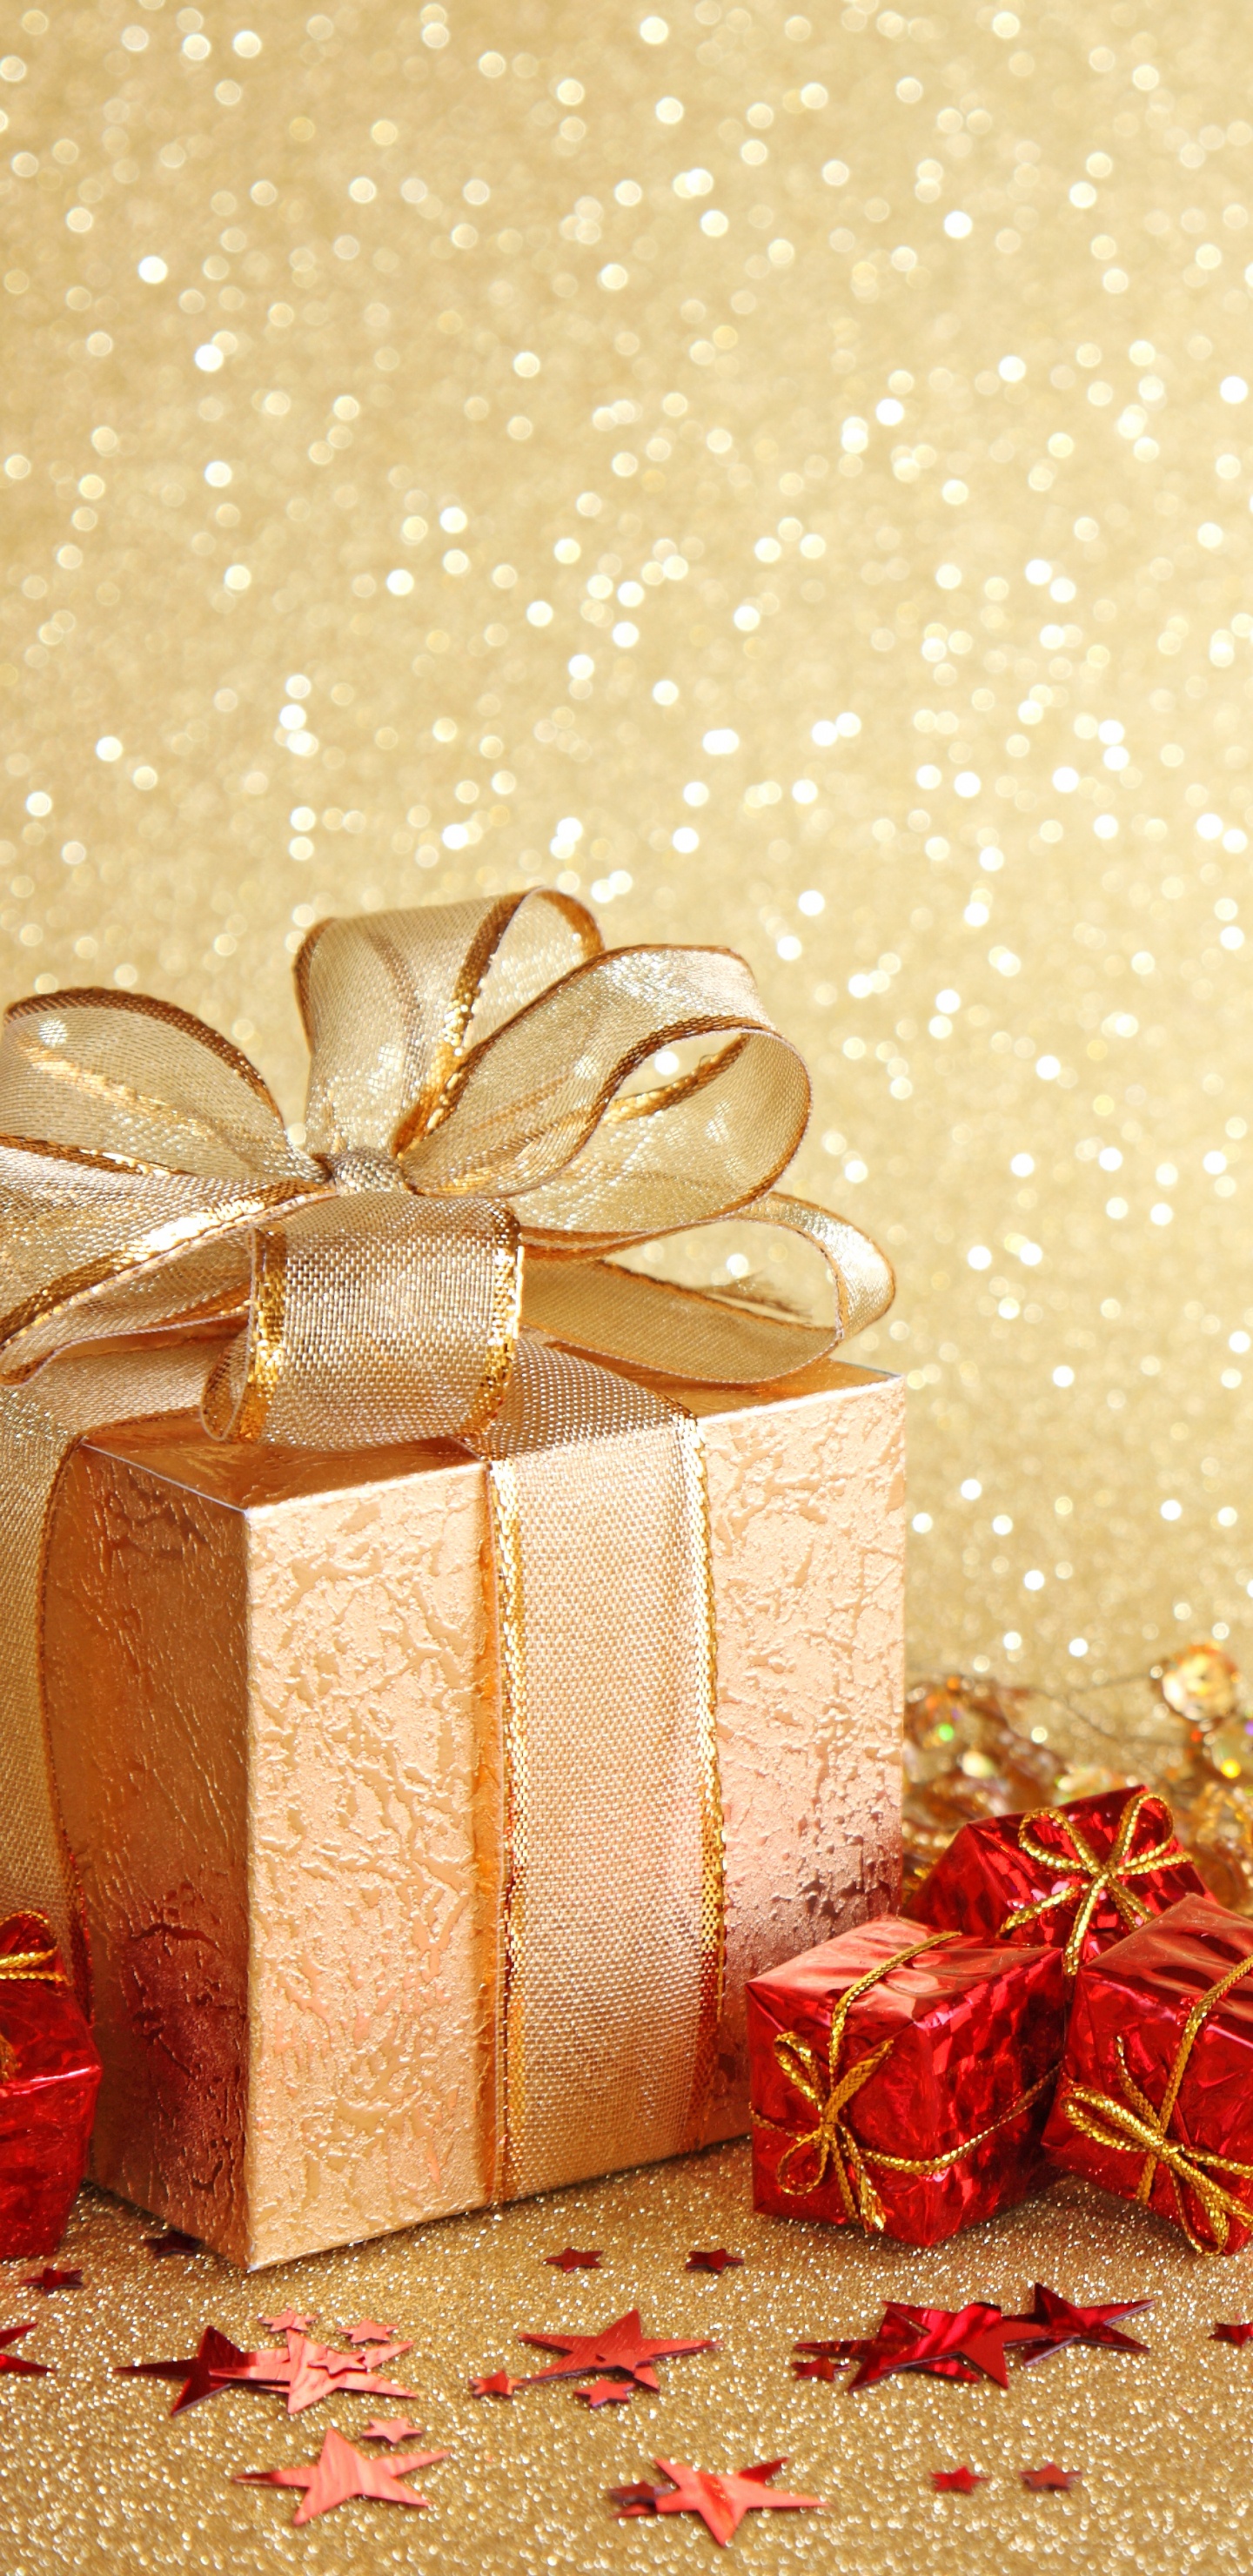 新的一年, 圣诞节那天, 礼品包装, 丝带, 圣诞装饰 壁纸 1440x2960 允许